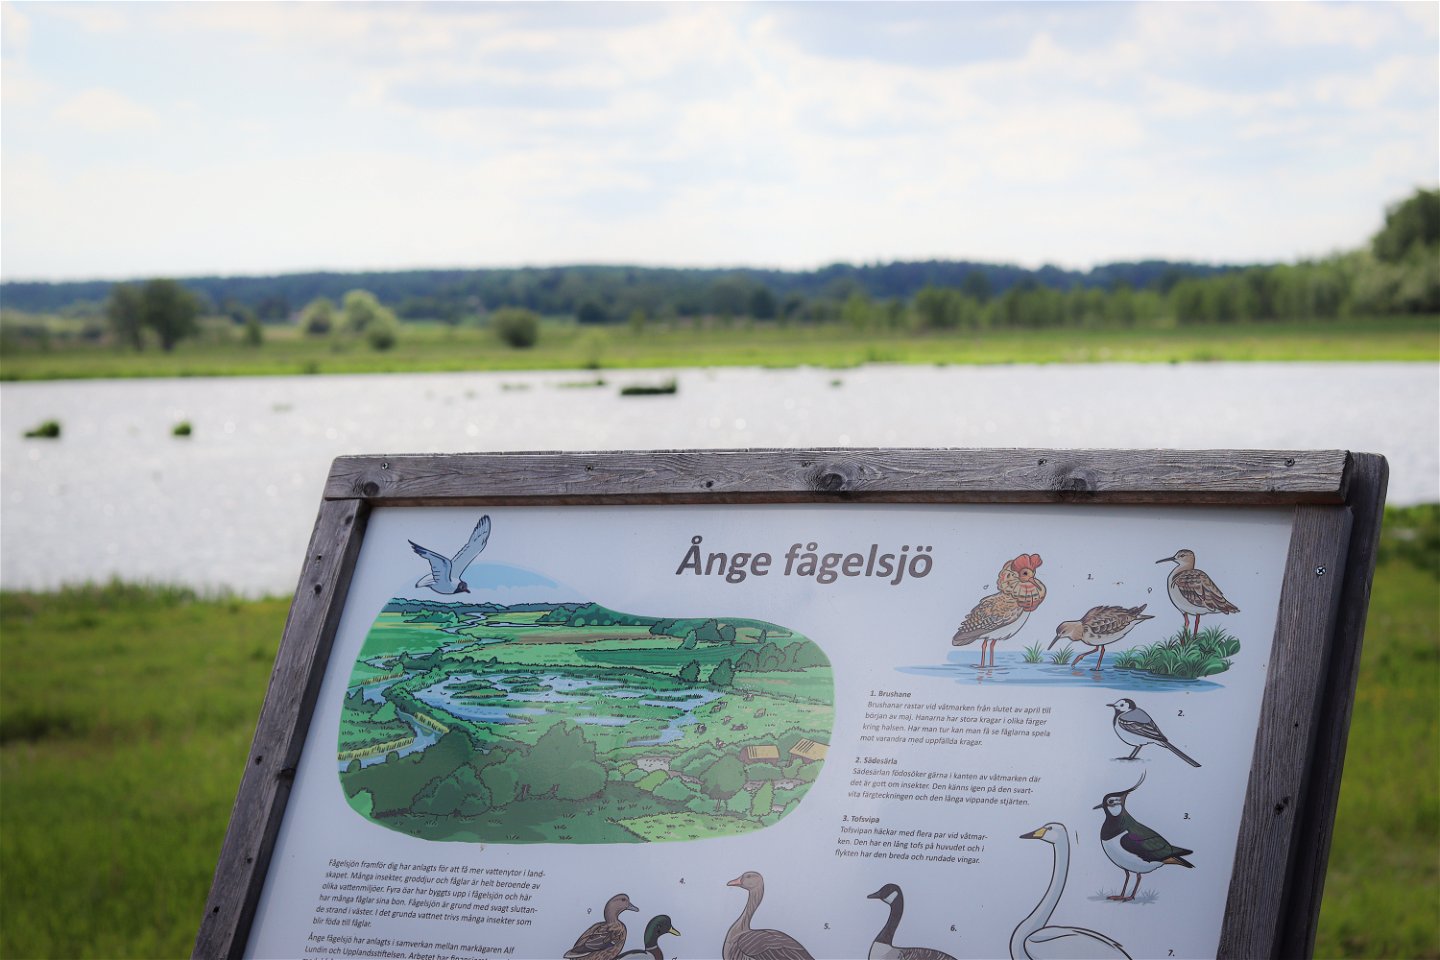 En skylt med fåglar och texten "Ånge fågelsjö", med utsikt mot en sjö.